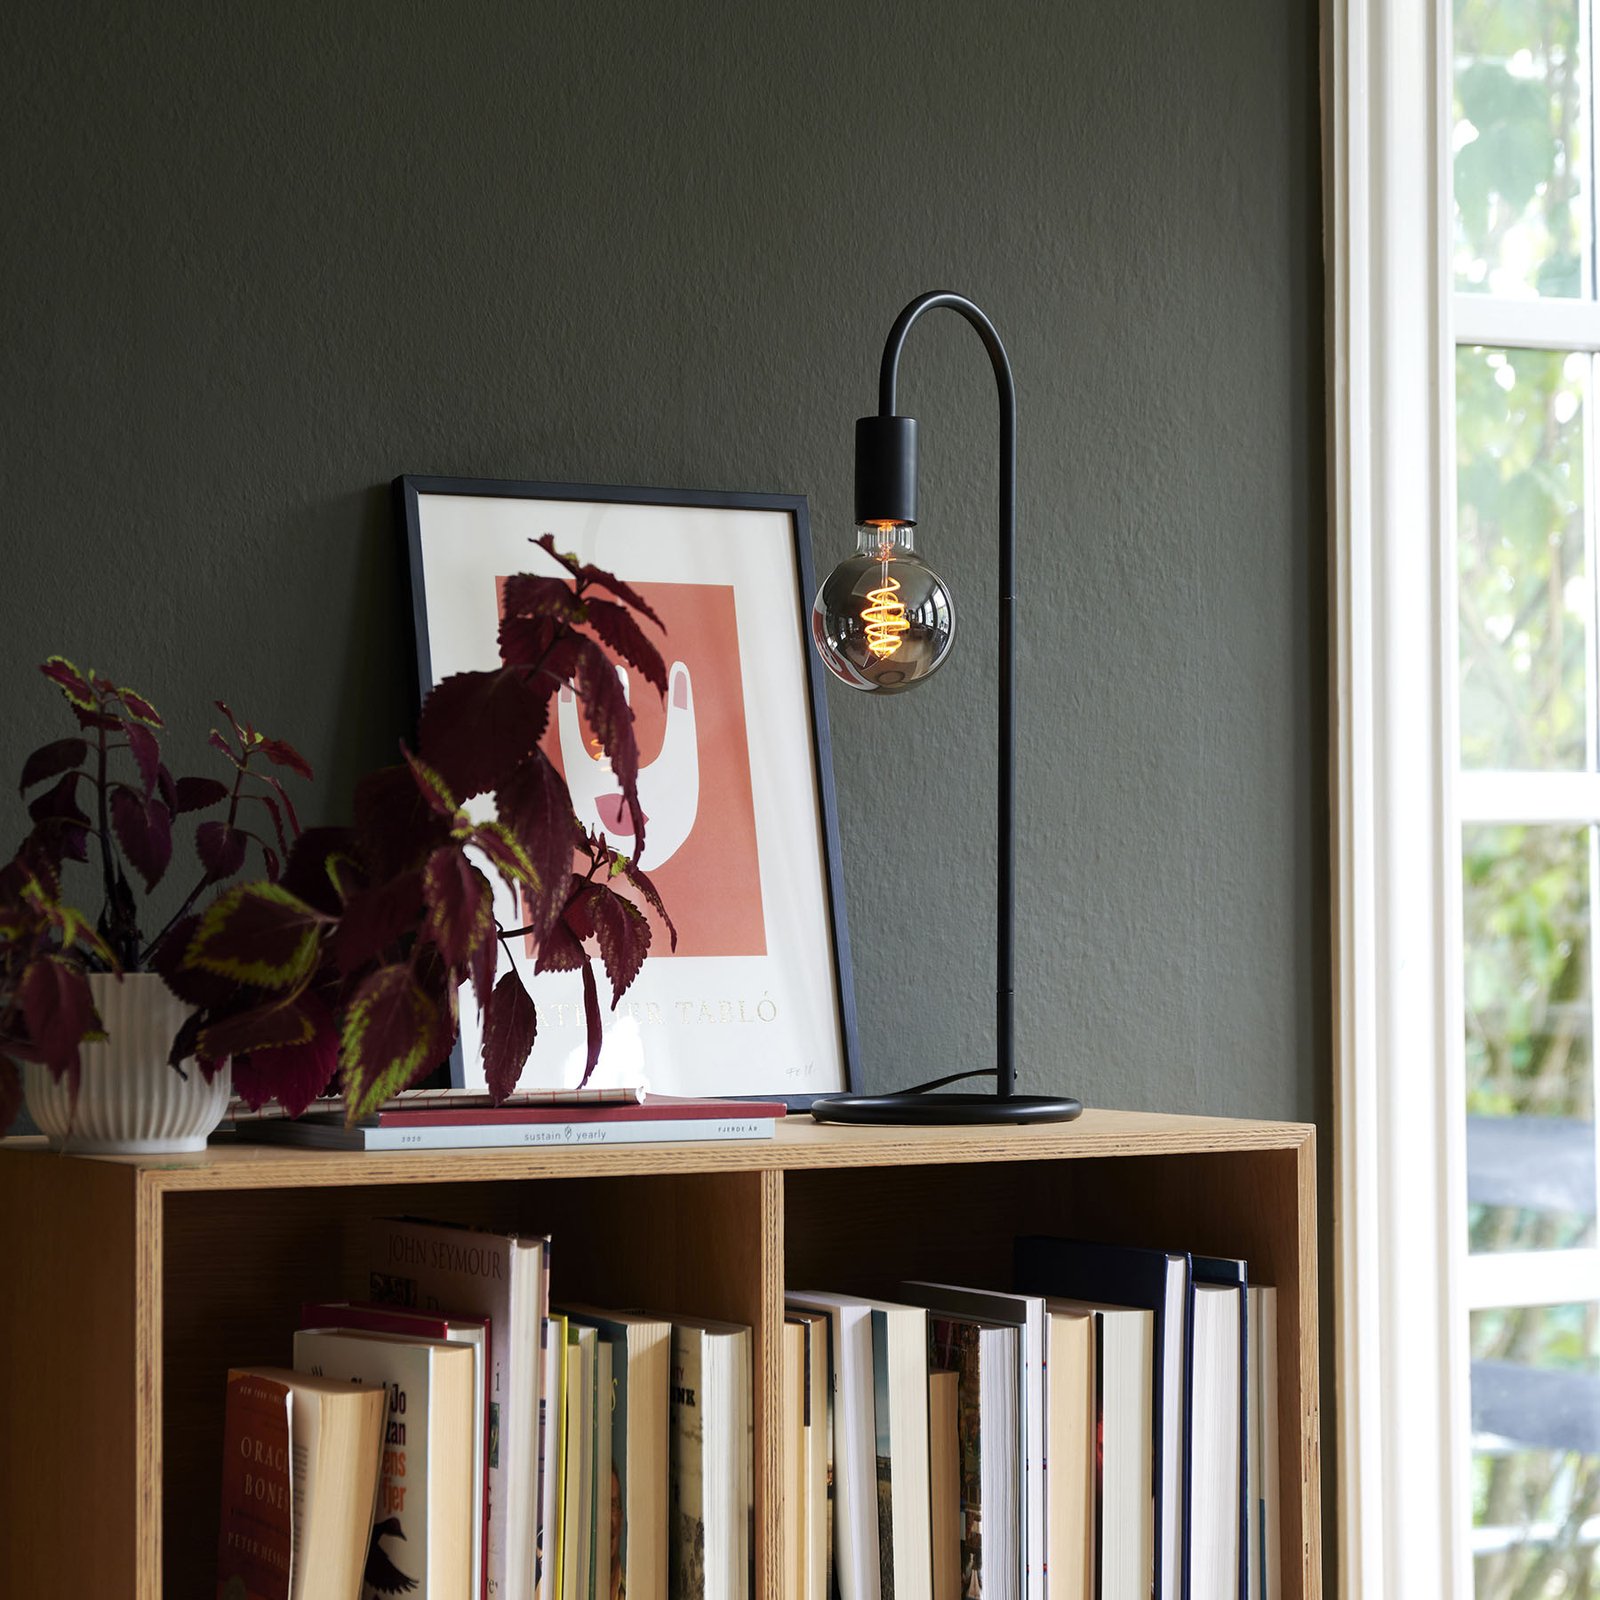 Lampa stołowa Paco w minimalistycznym stylu